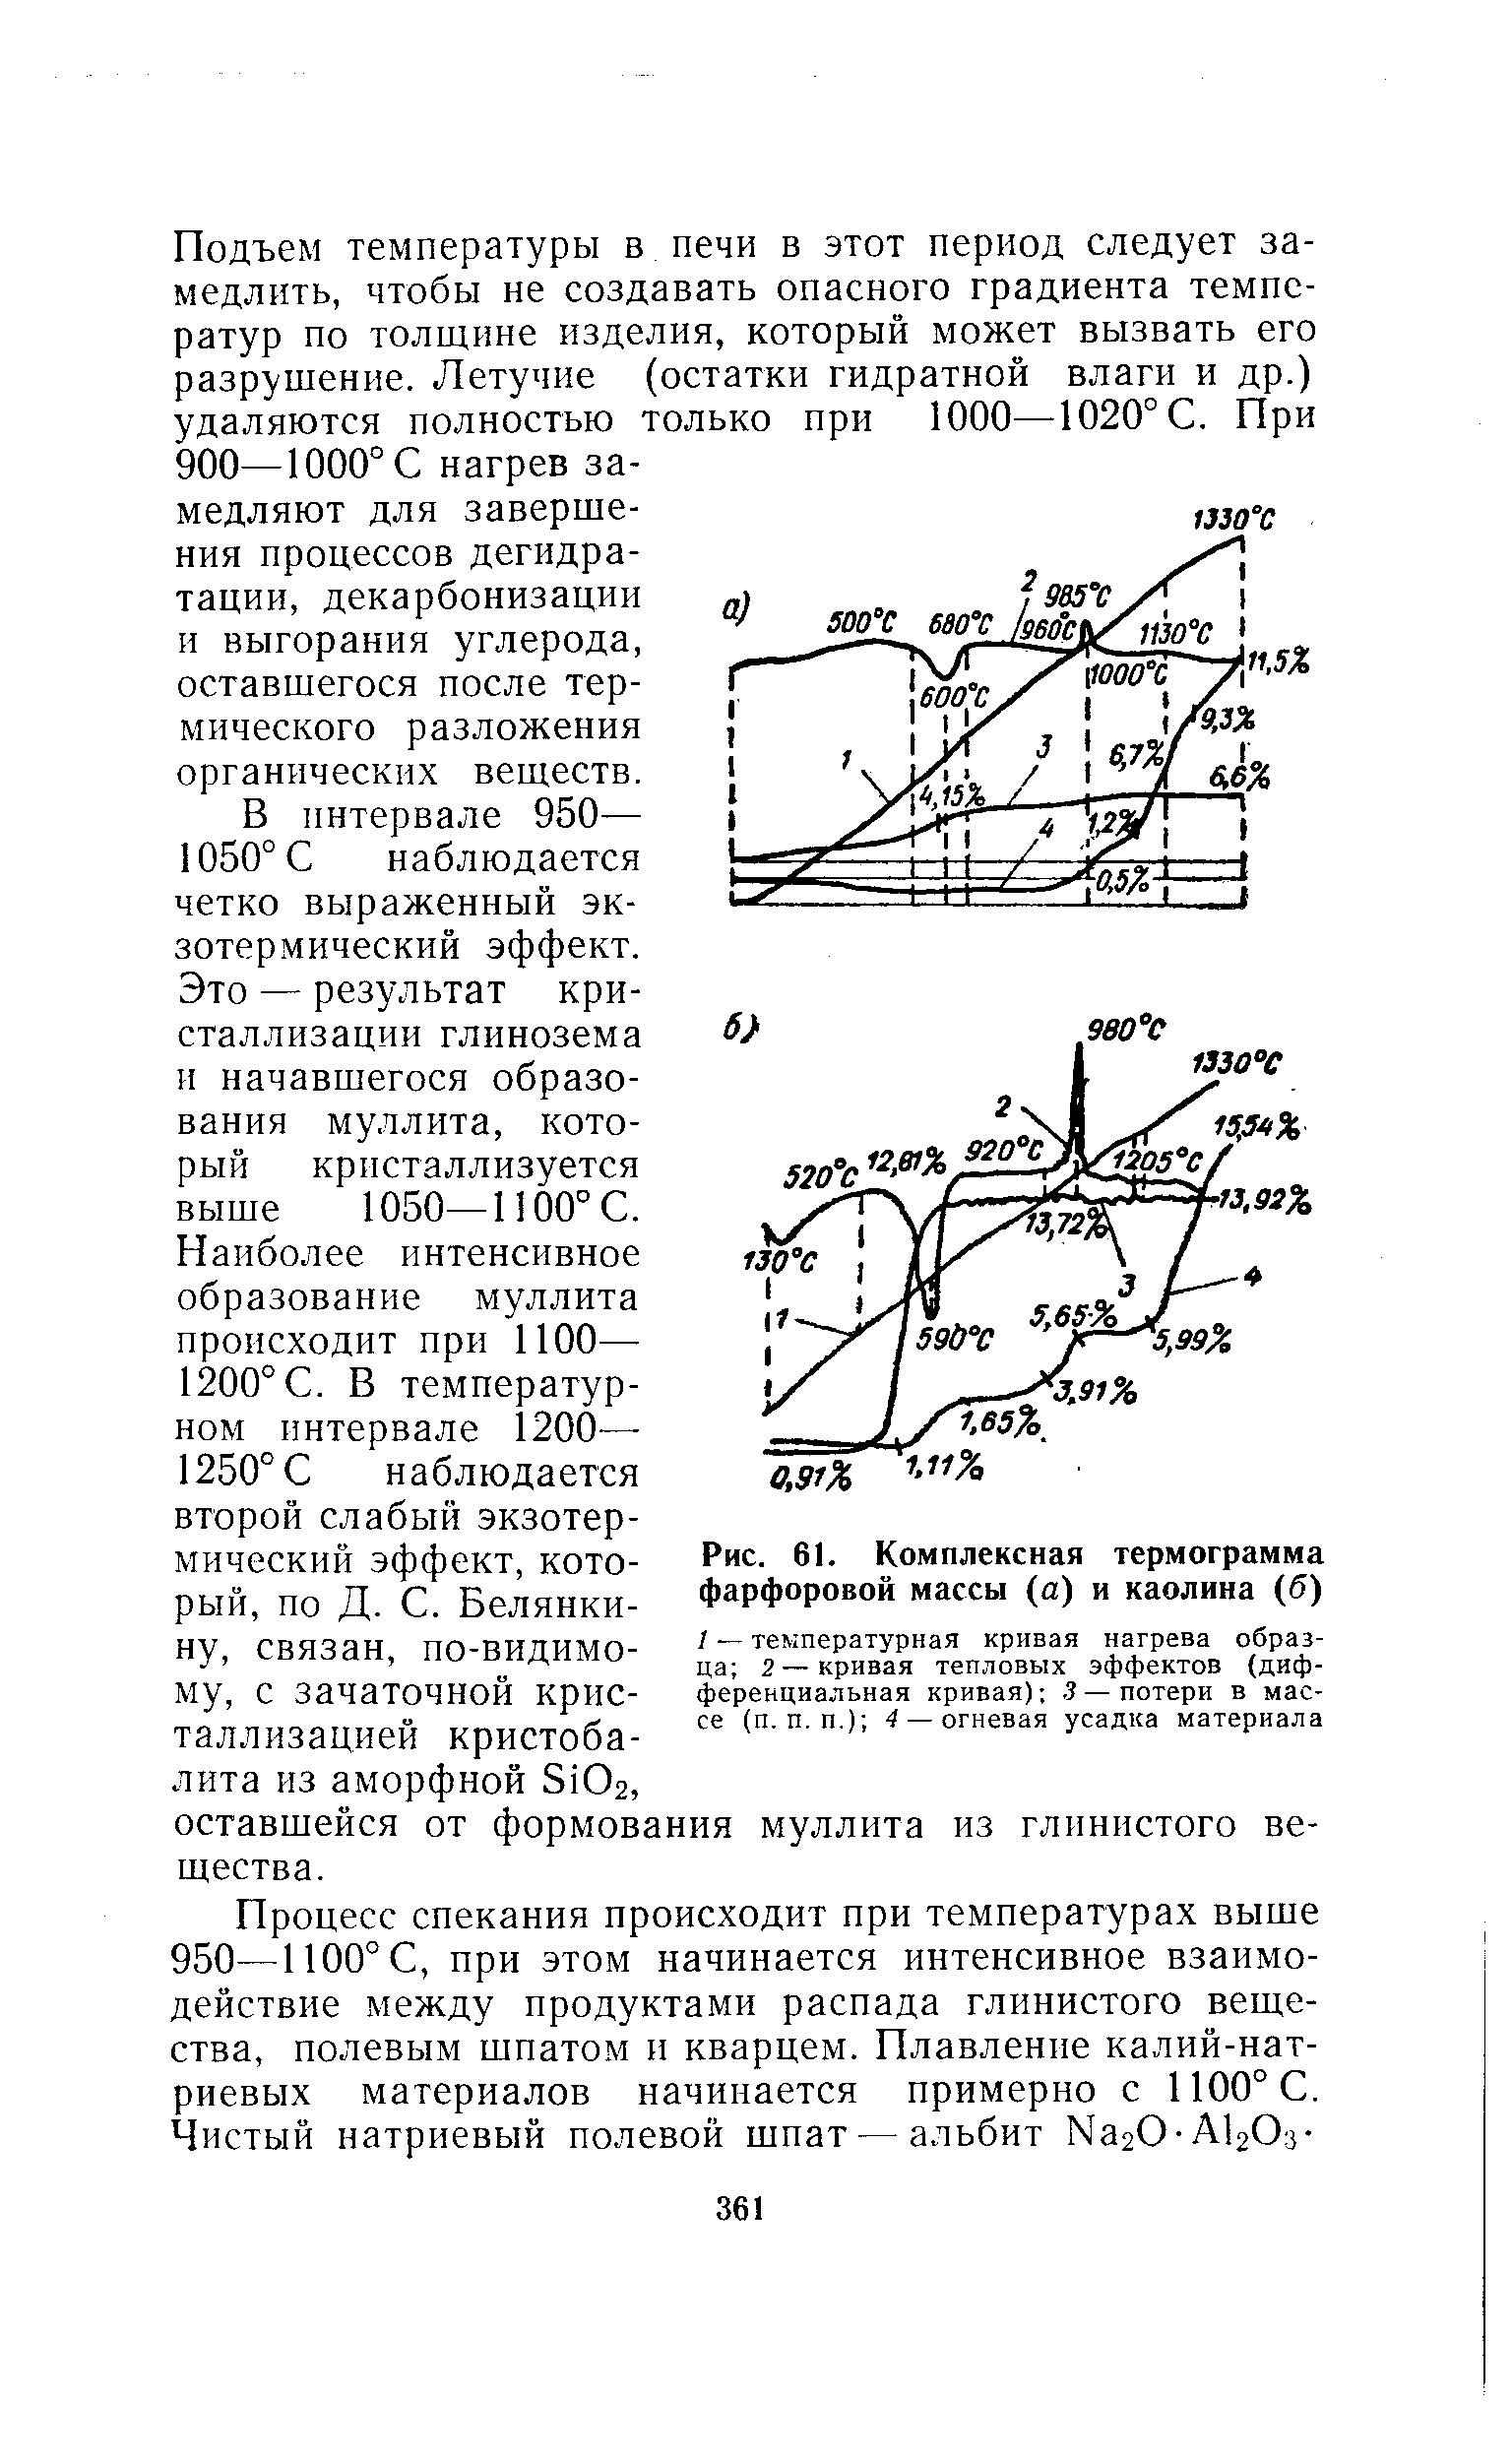 Рис. 61. Комплексная термограмма фарфоровой массы (а) и каолина (б)
